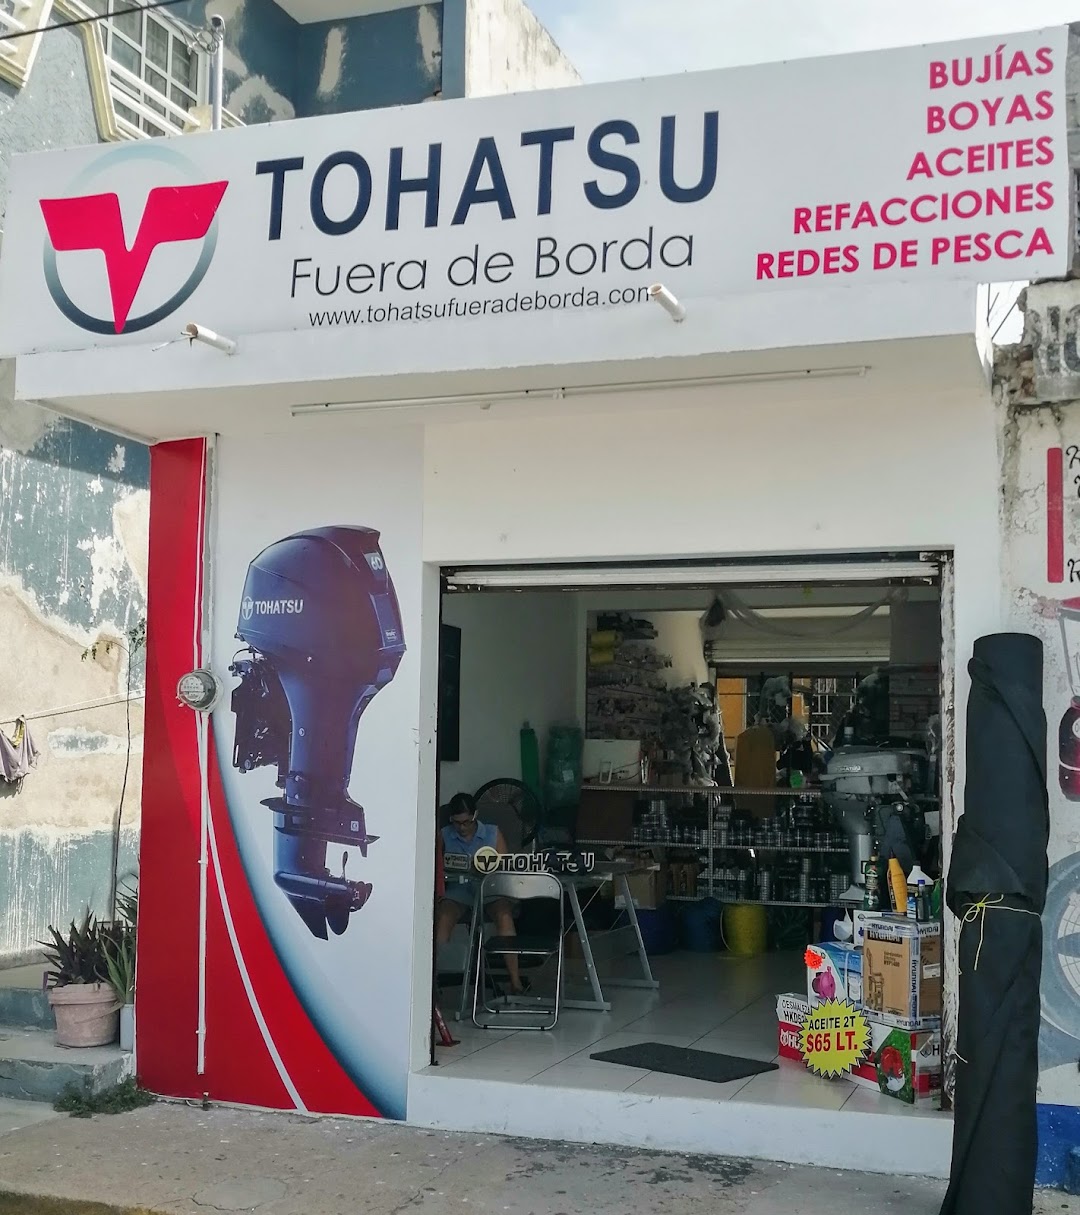 Tohatsu Fuera De borda Alvarado Veracruz